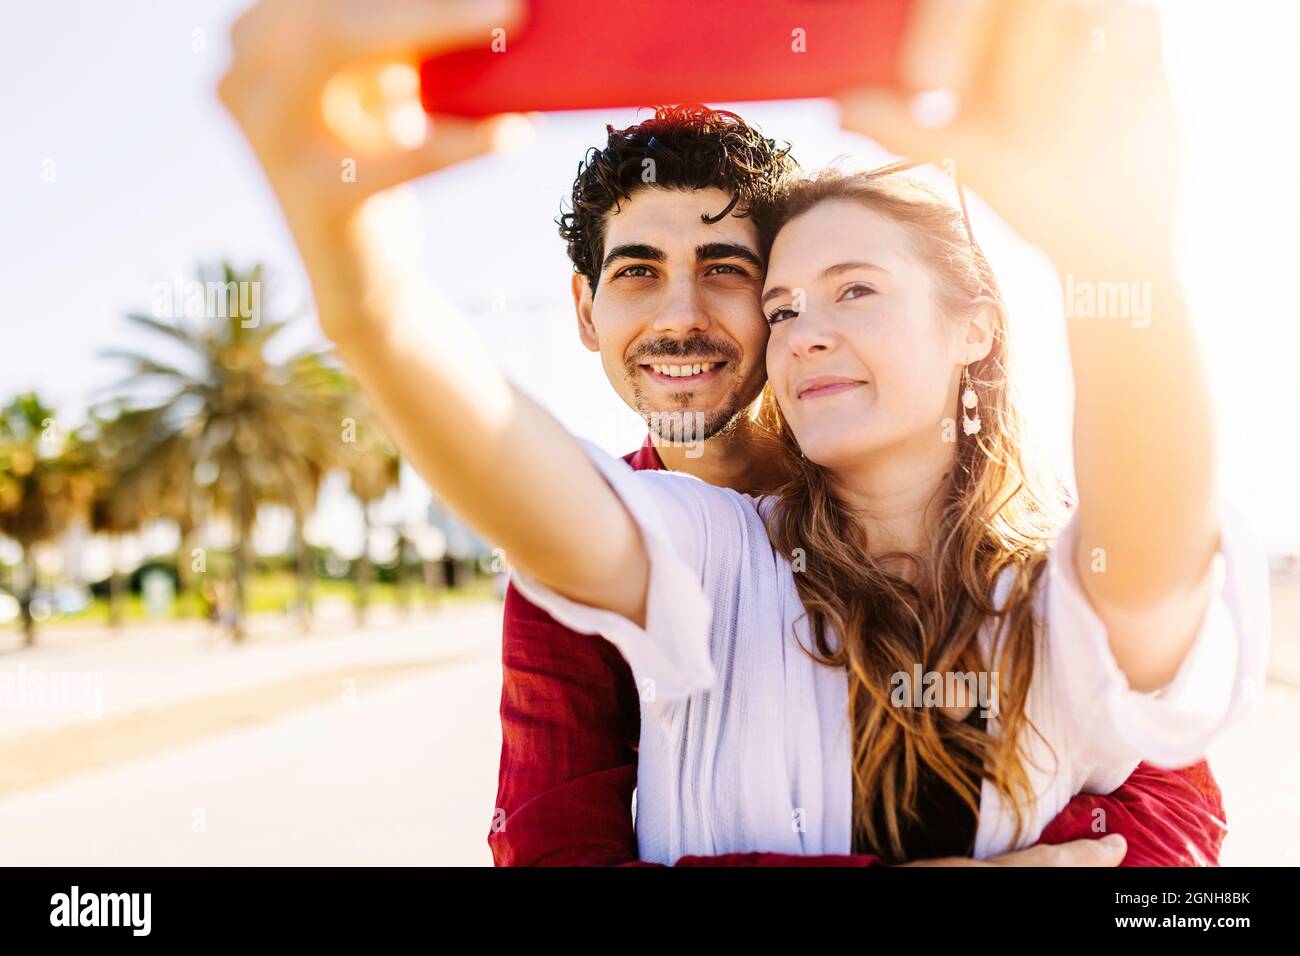 Glückliches junges Reisender Paar, das Selfie-Portrait mit dem Smartphone macht Stockfoto